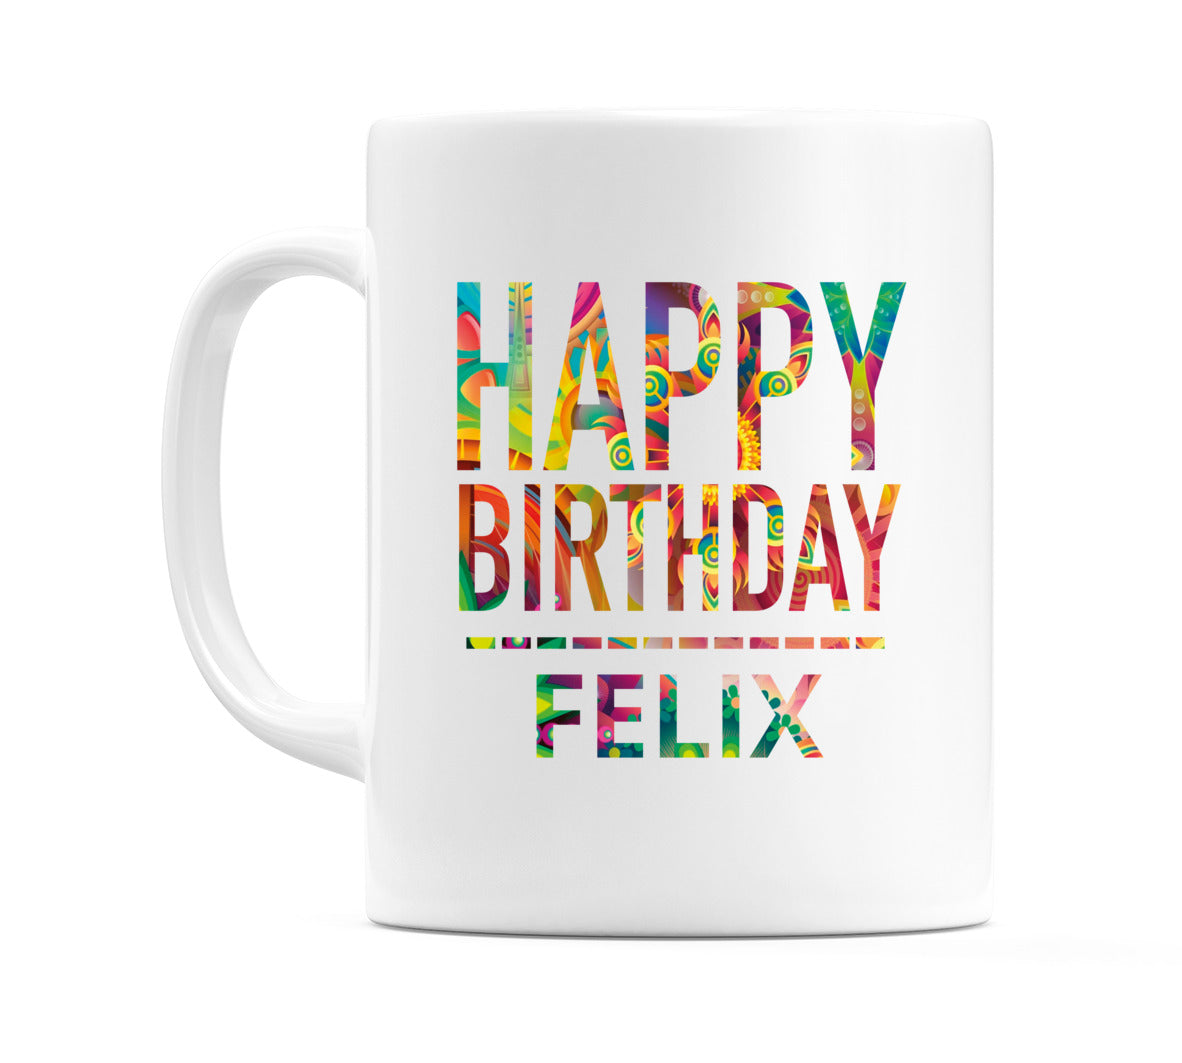 Happy Birthday Felix (Tie Dye Effect) Mug Cup by WeDoMugs